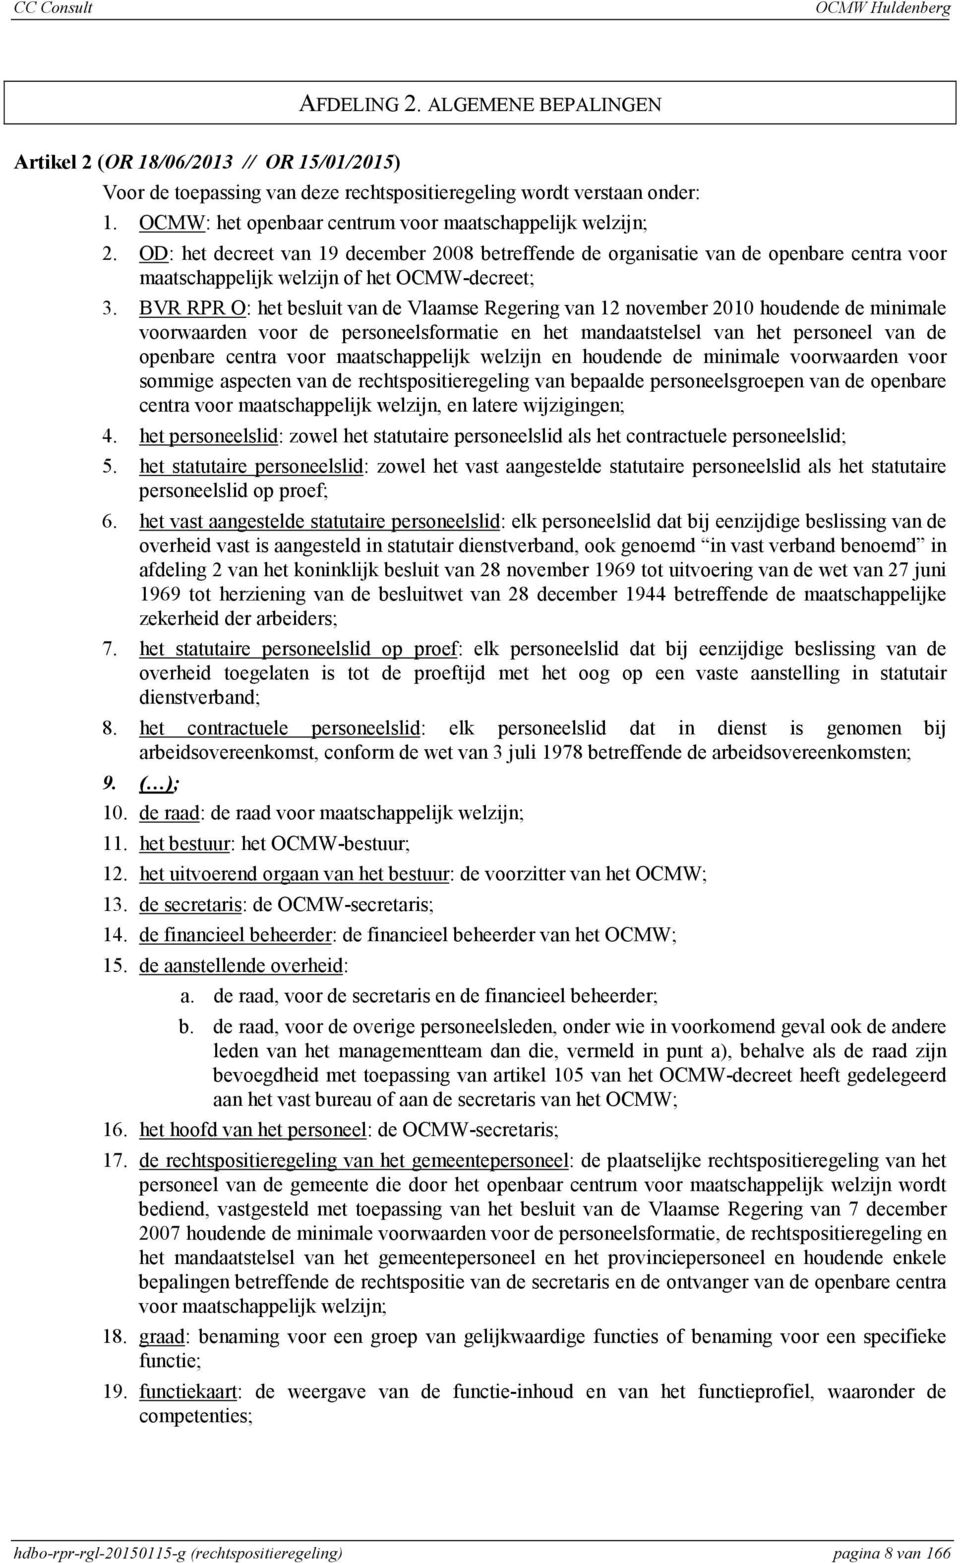 BVR RPR O: het besluit van de Vlaamse Regering van 12 november 2010 houdende de minimale voorwaarden voor de personeelsformatie en het mandaatstelsel van het personeel van de openbare centra voor